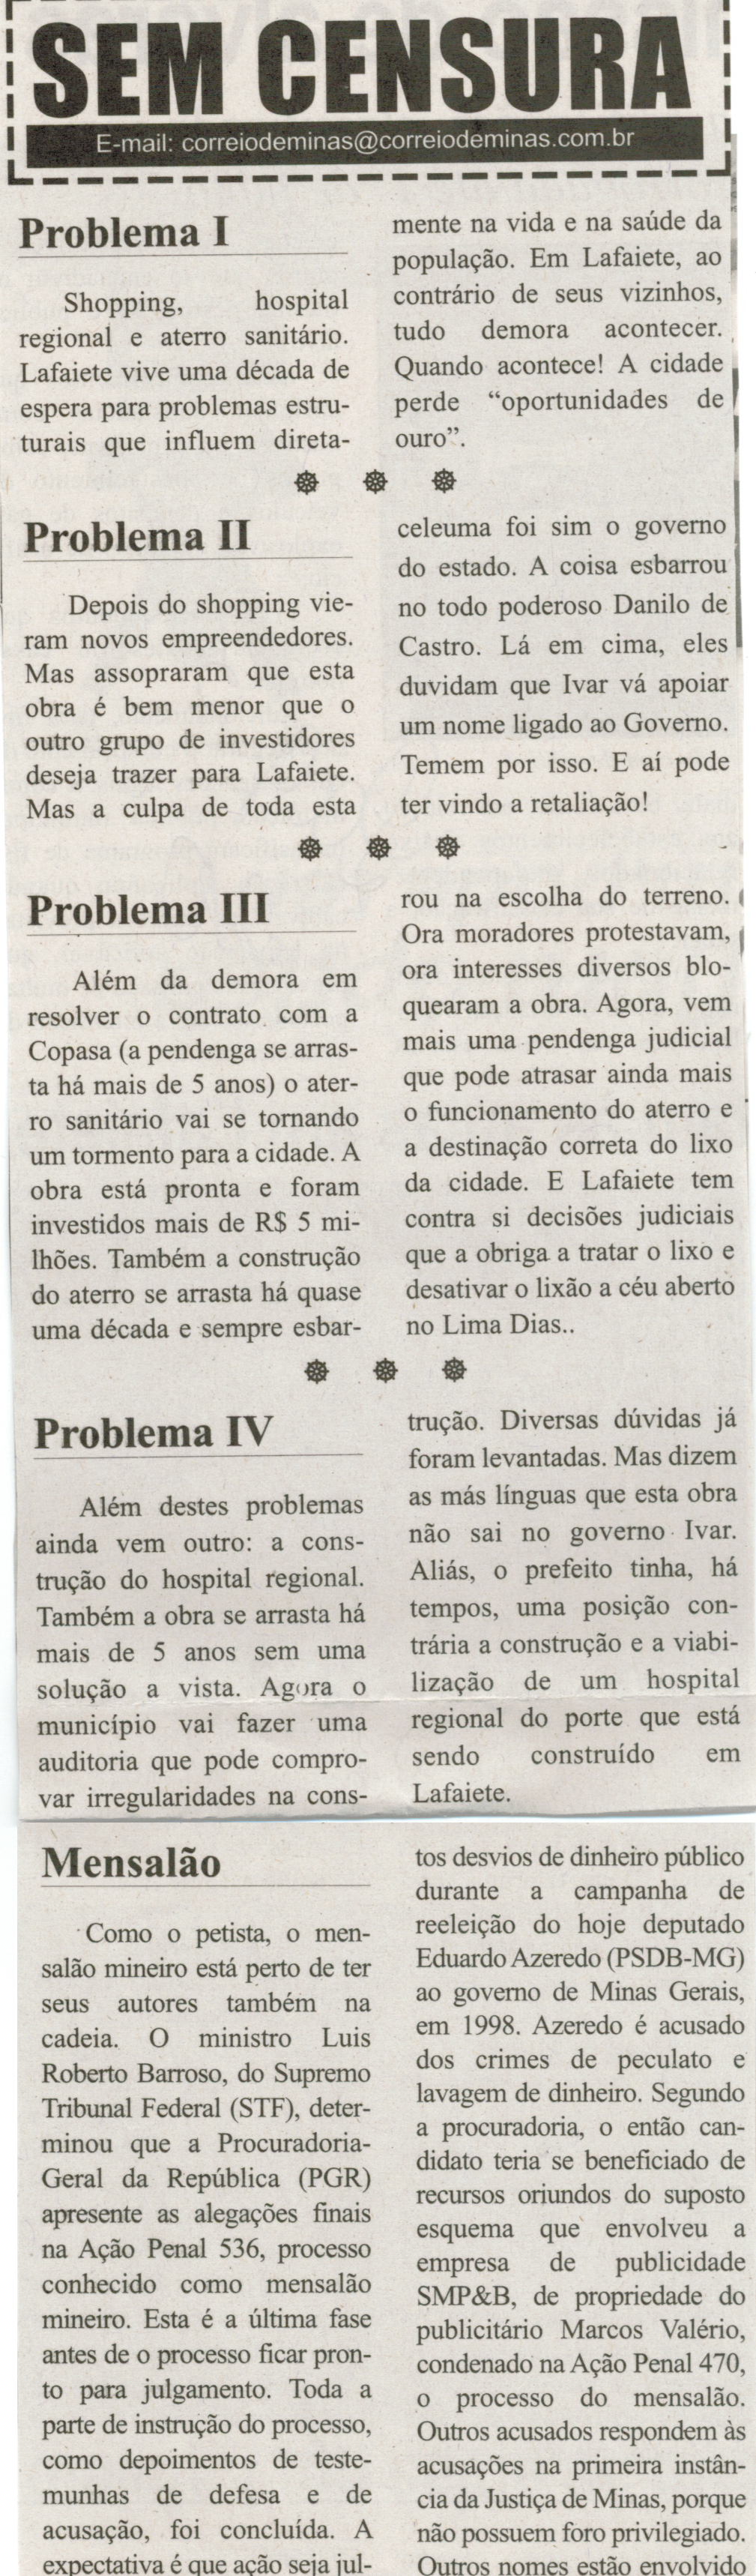 Problemas I; Problemas I; Problemas III; Problemas IV. Correio de Minas, Conselheiro Lafaiete, 25 jan. 2014, Sem censura, p. 3.